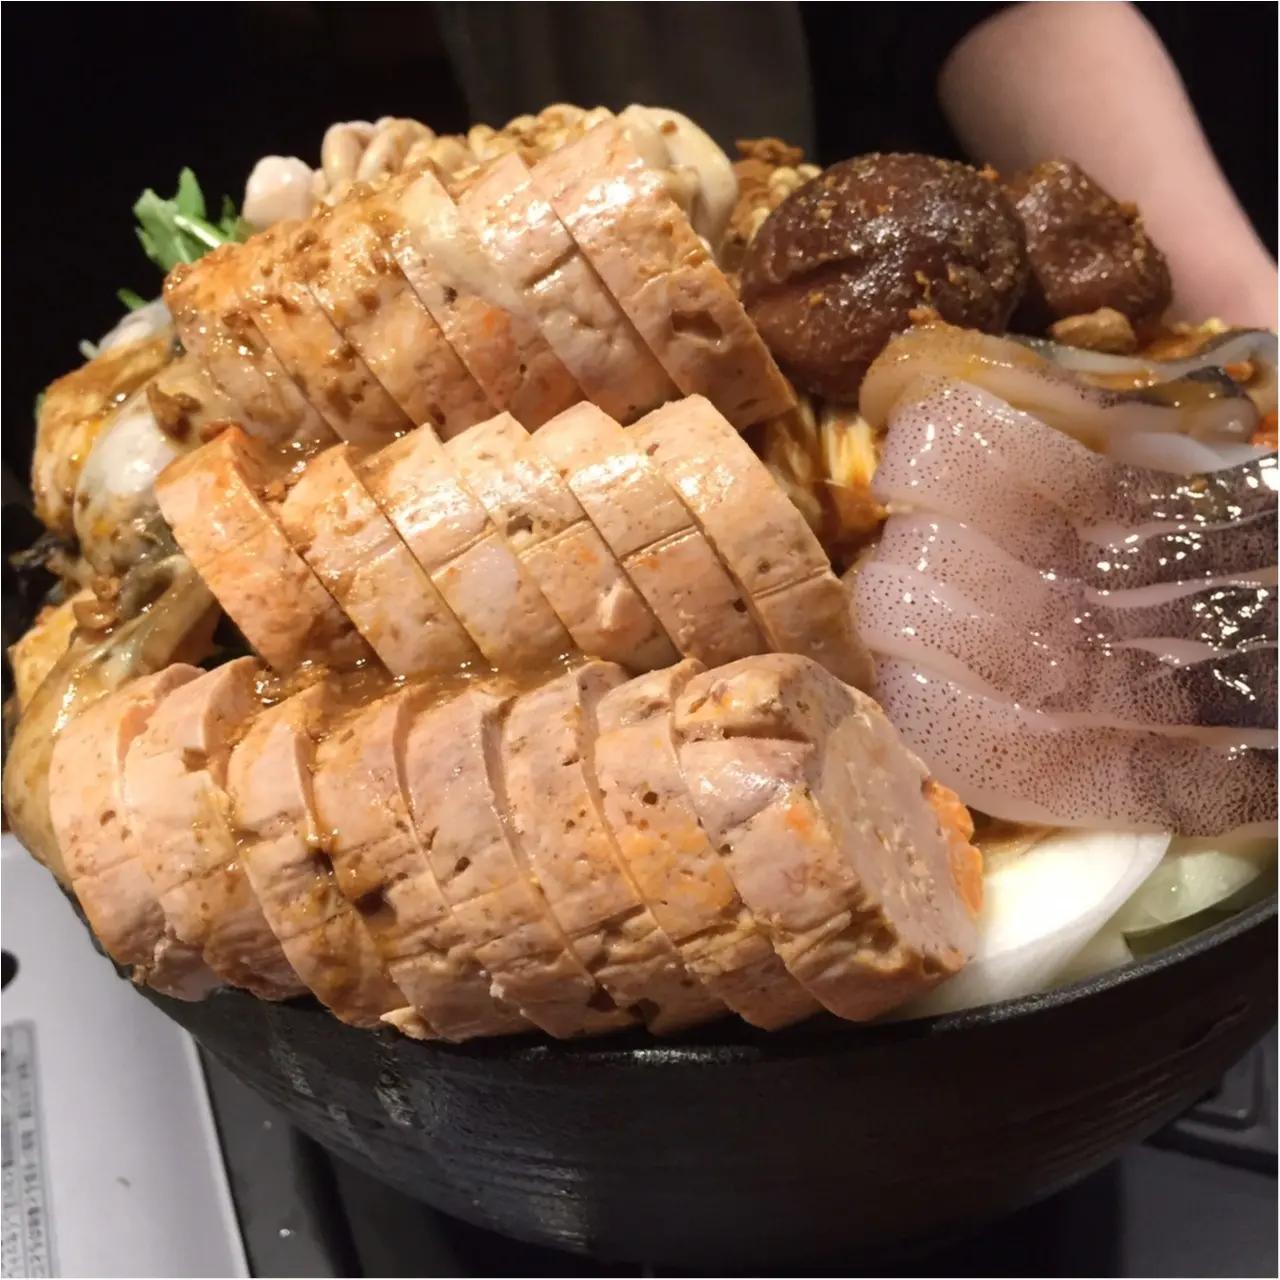 あんこう 牡蠣 白子 フォトジェニック 東京で食べられる痛風鍋top3 Moreインフルエンサーズブログ Daily More